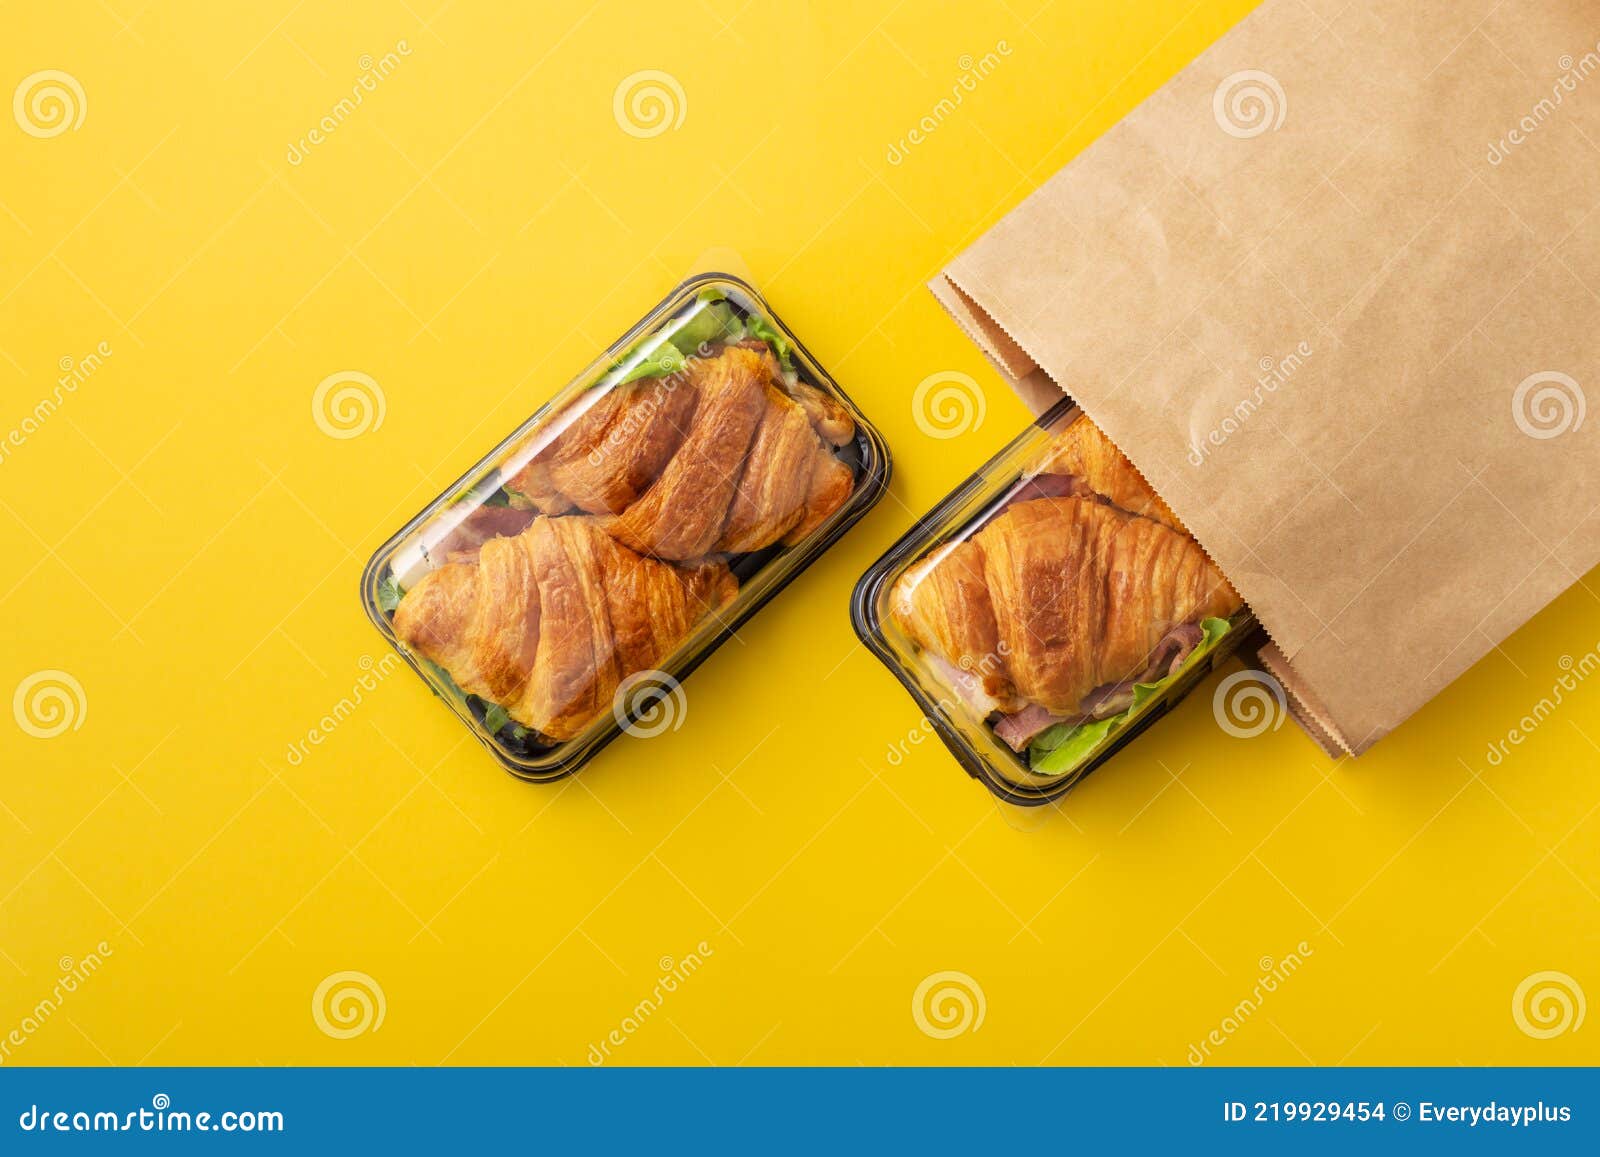 Fundación Amargura Destino Sándwich De Croissant En Contenedor De Comida Para Llevar Y Bolsa De Papel  Foto de archivo - Imagen de disponible, conjunto: 219929454